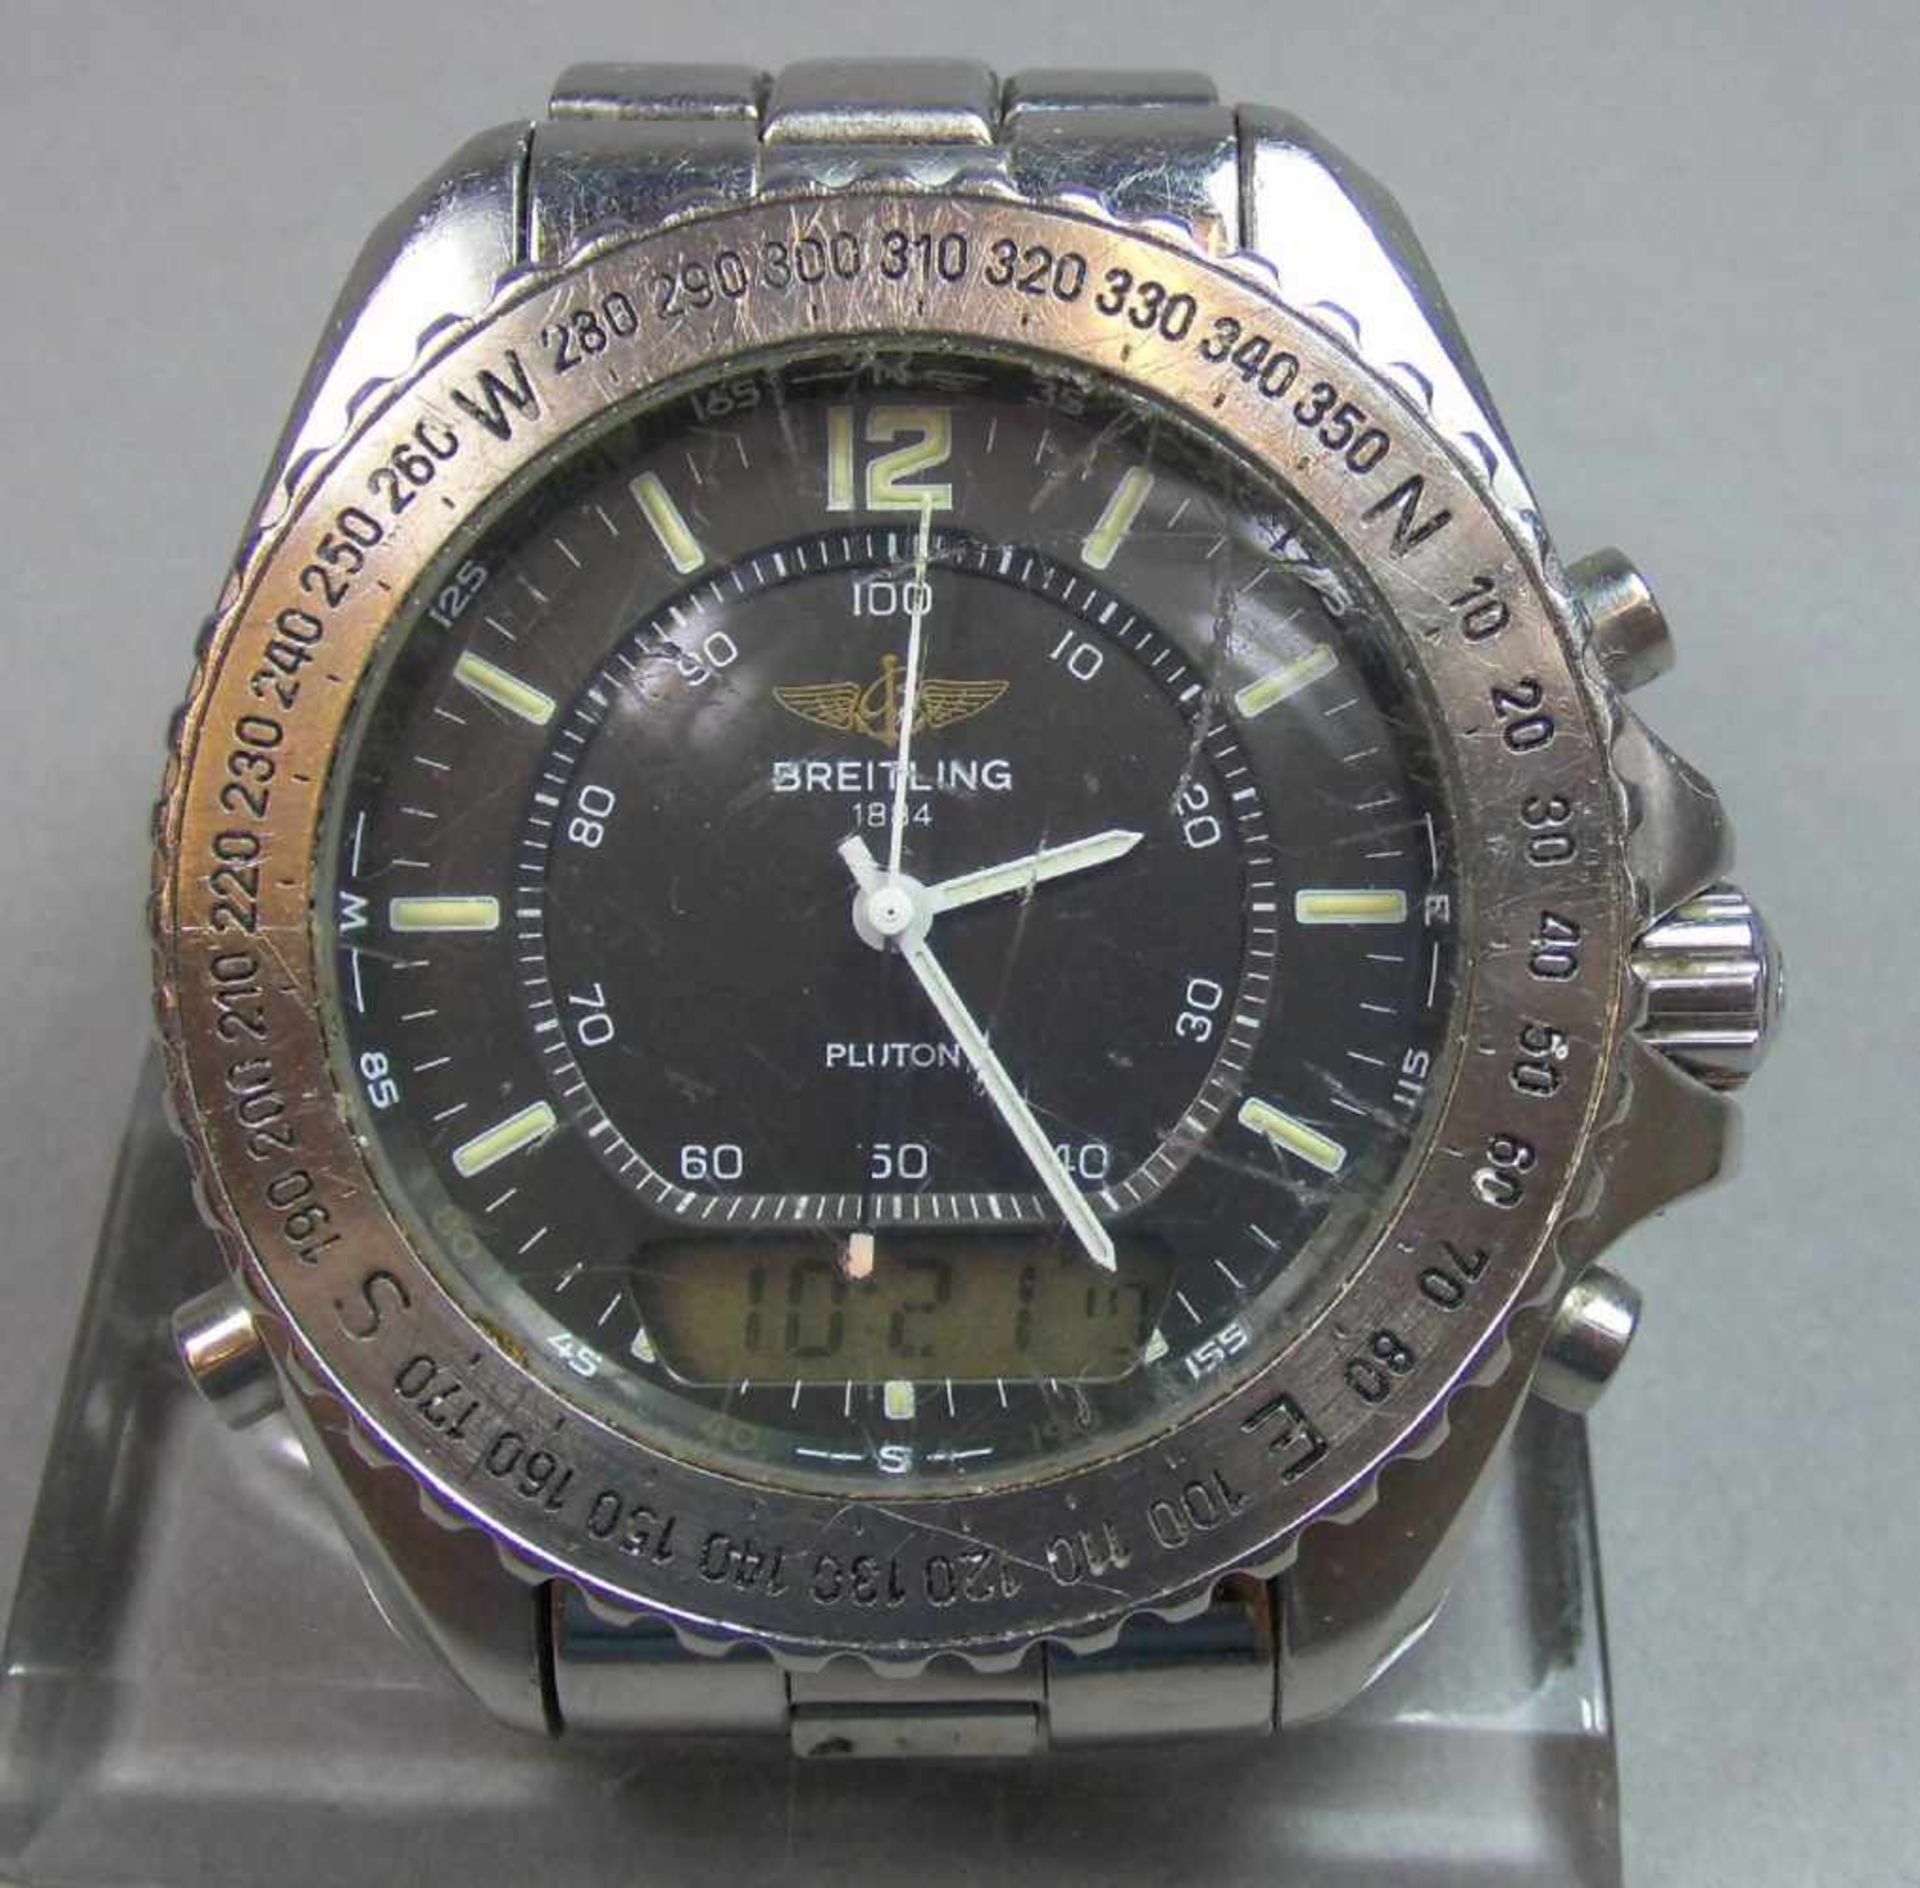 BREITLING "PLUTON" ARMBANDUHR / wristwatch, Quarz-Uhr, Schweiz. Stahlgehäuse mit drehbarer - Image 2 of 9